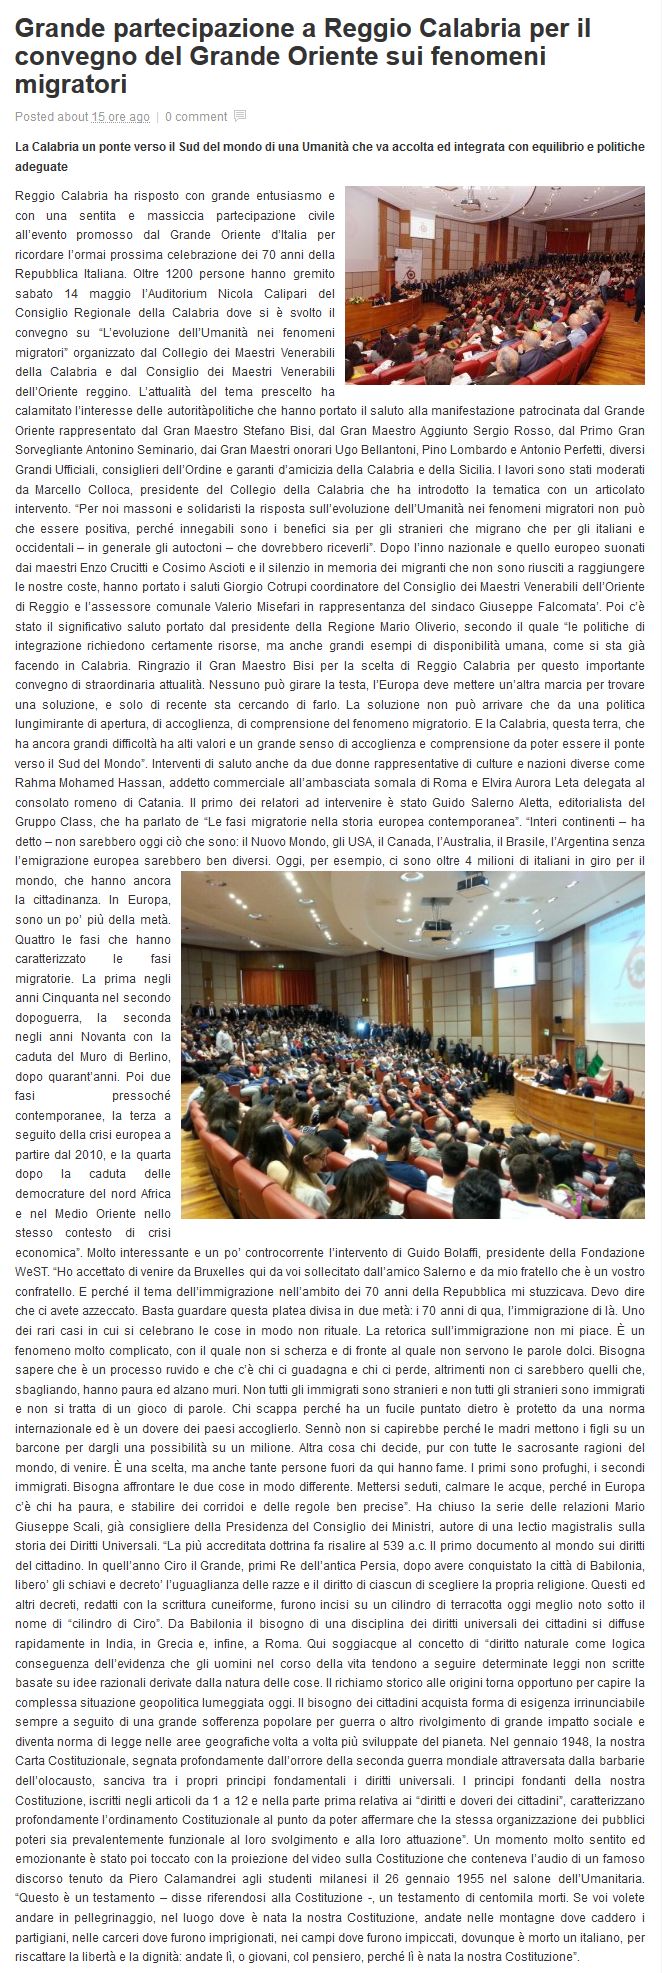 L'articolo pubblicato  il 17 maggio 2016 dal giornale web Il Metropolitano